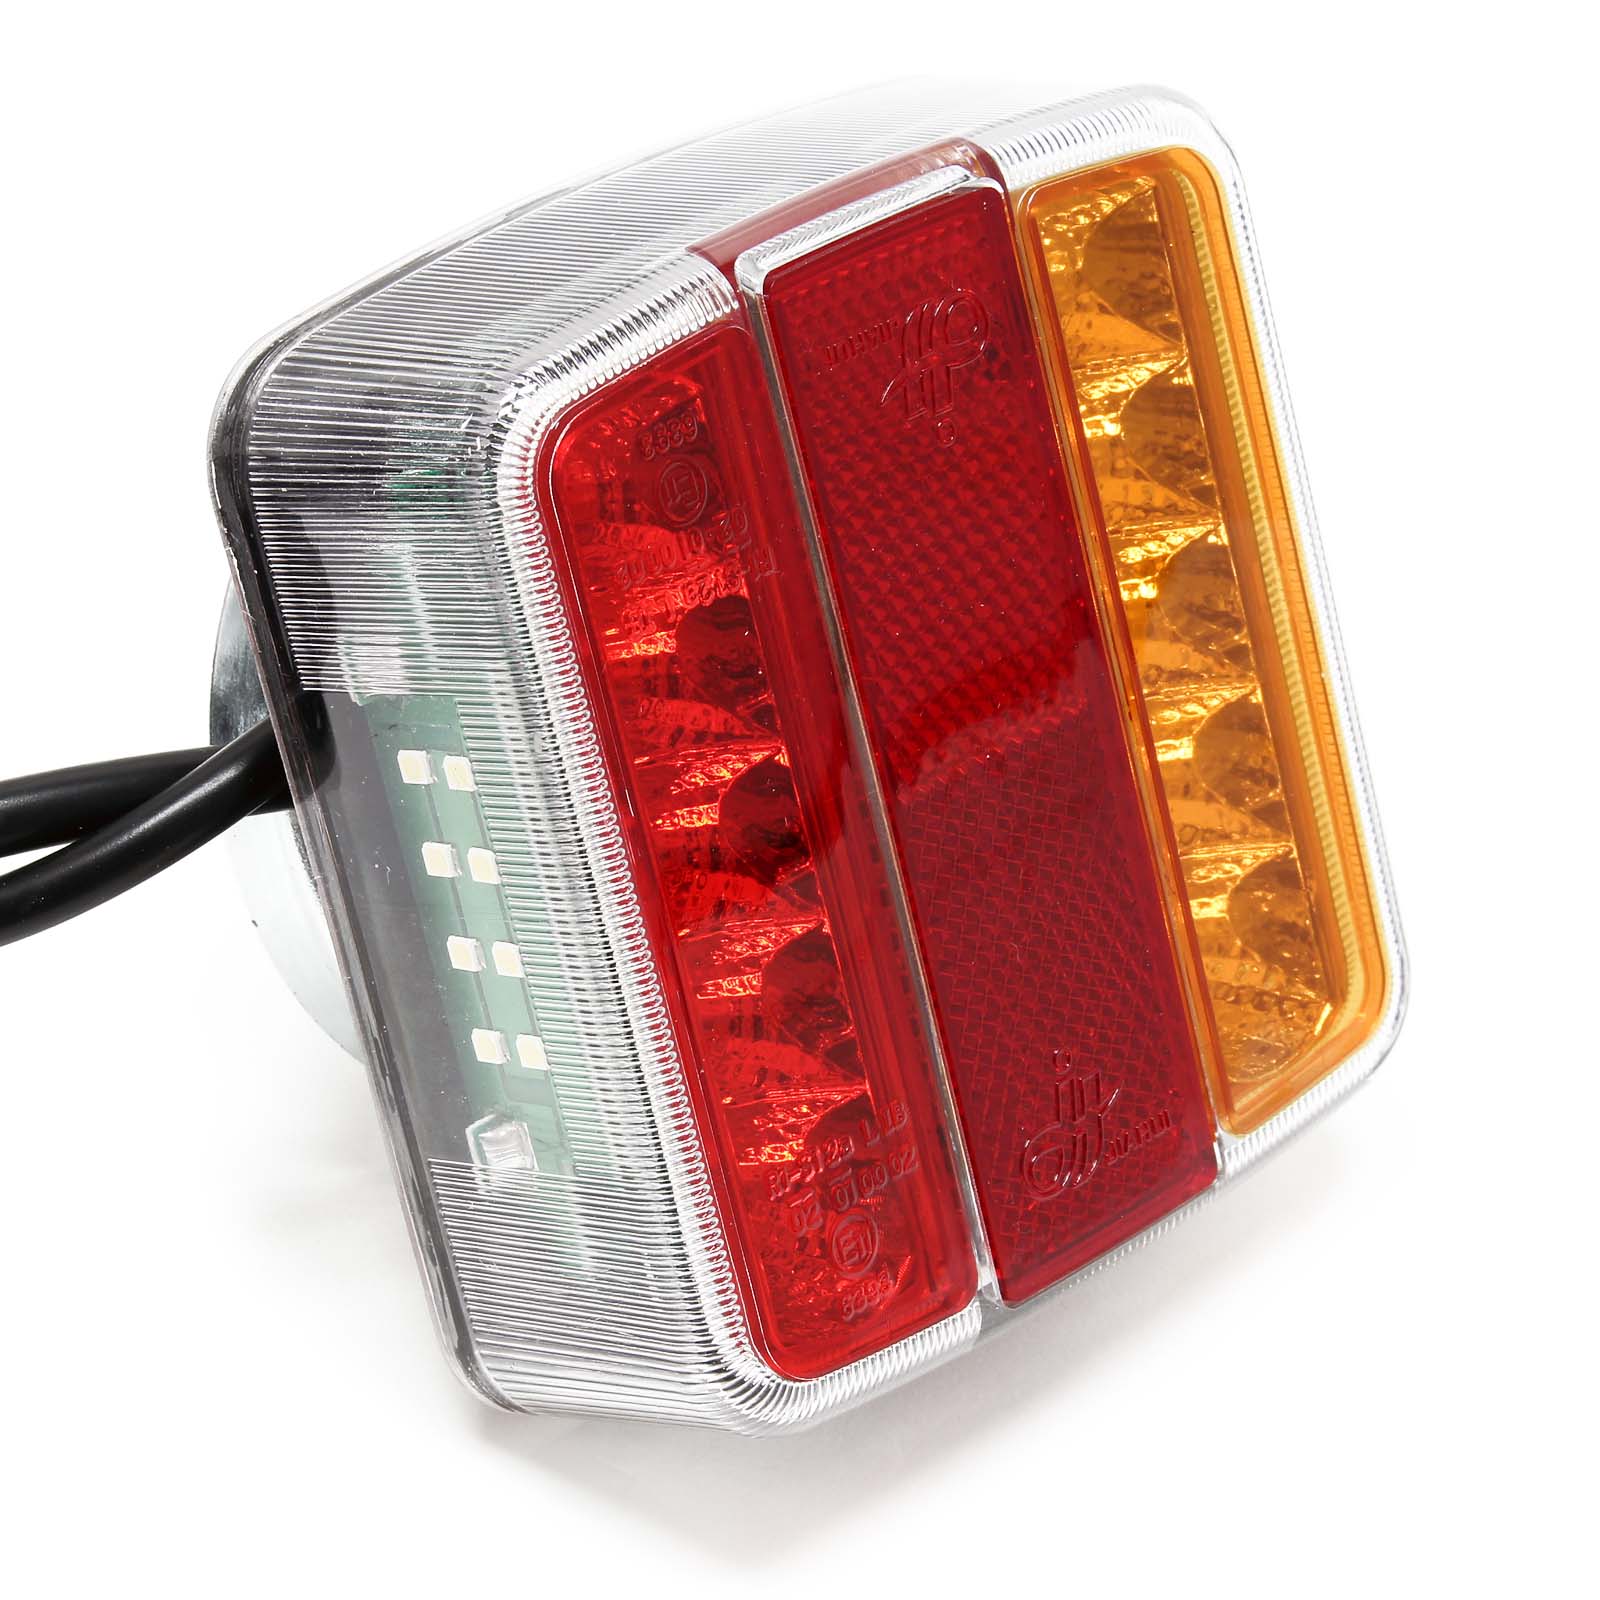 LED Rückleuchte mit Magneten Anhängerbeleuchtung 7-pol 12V E11